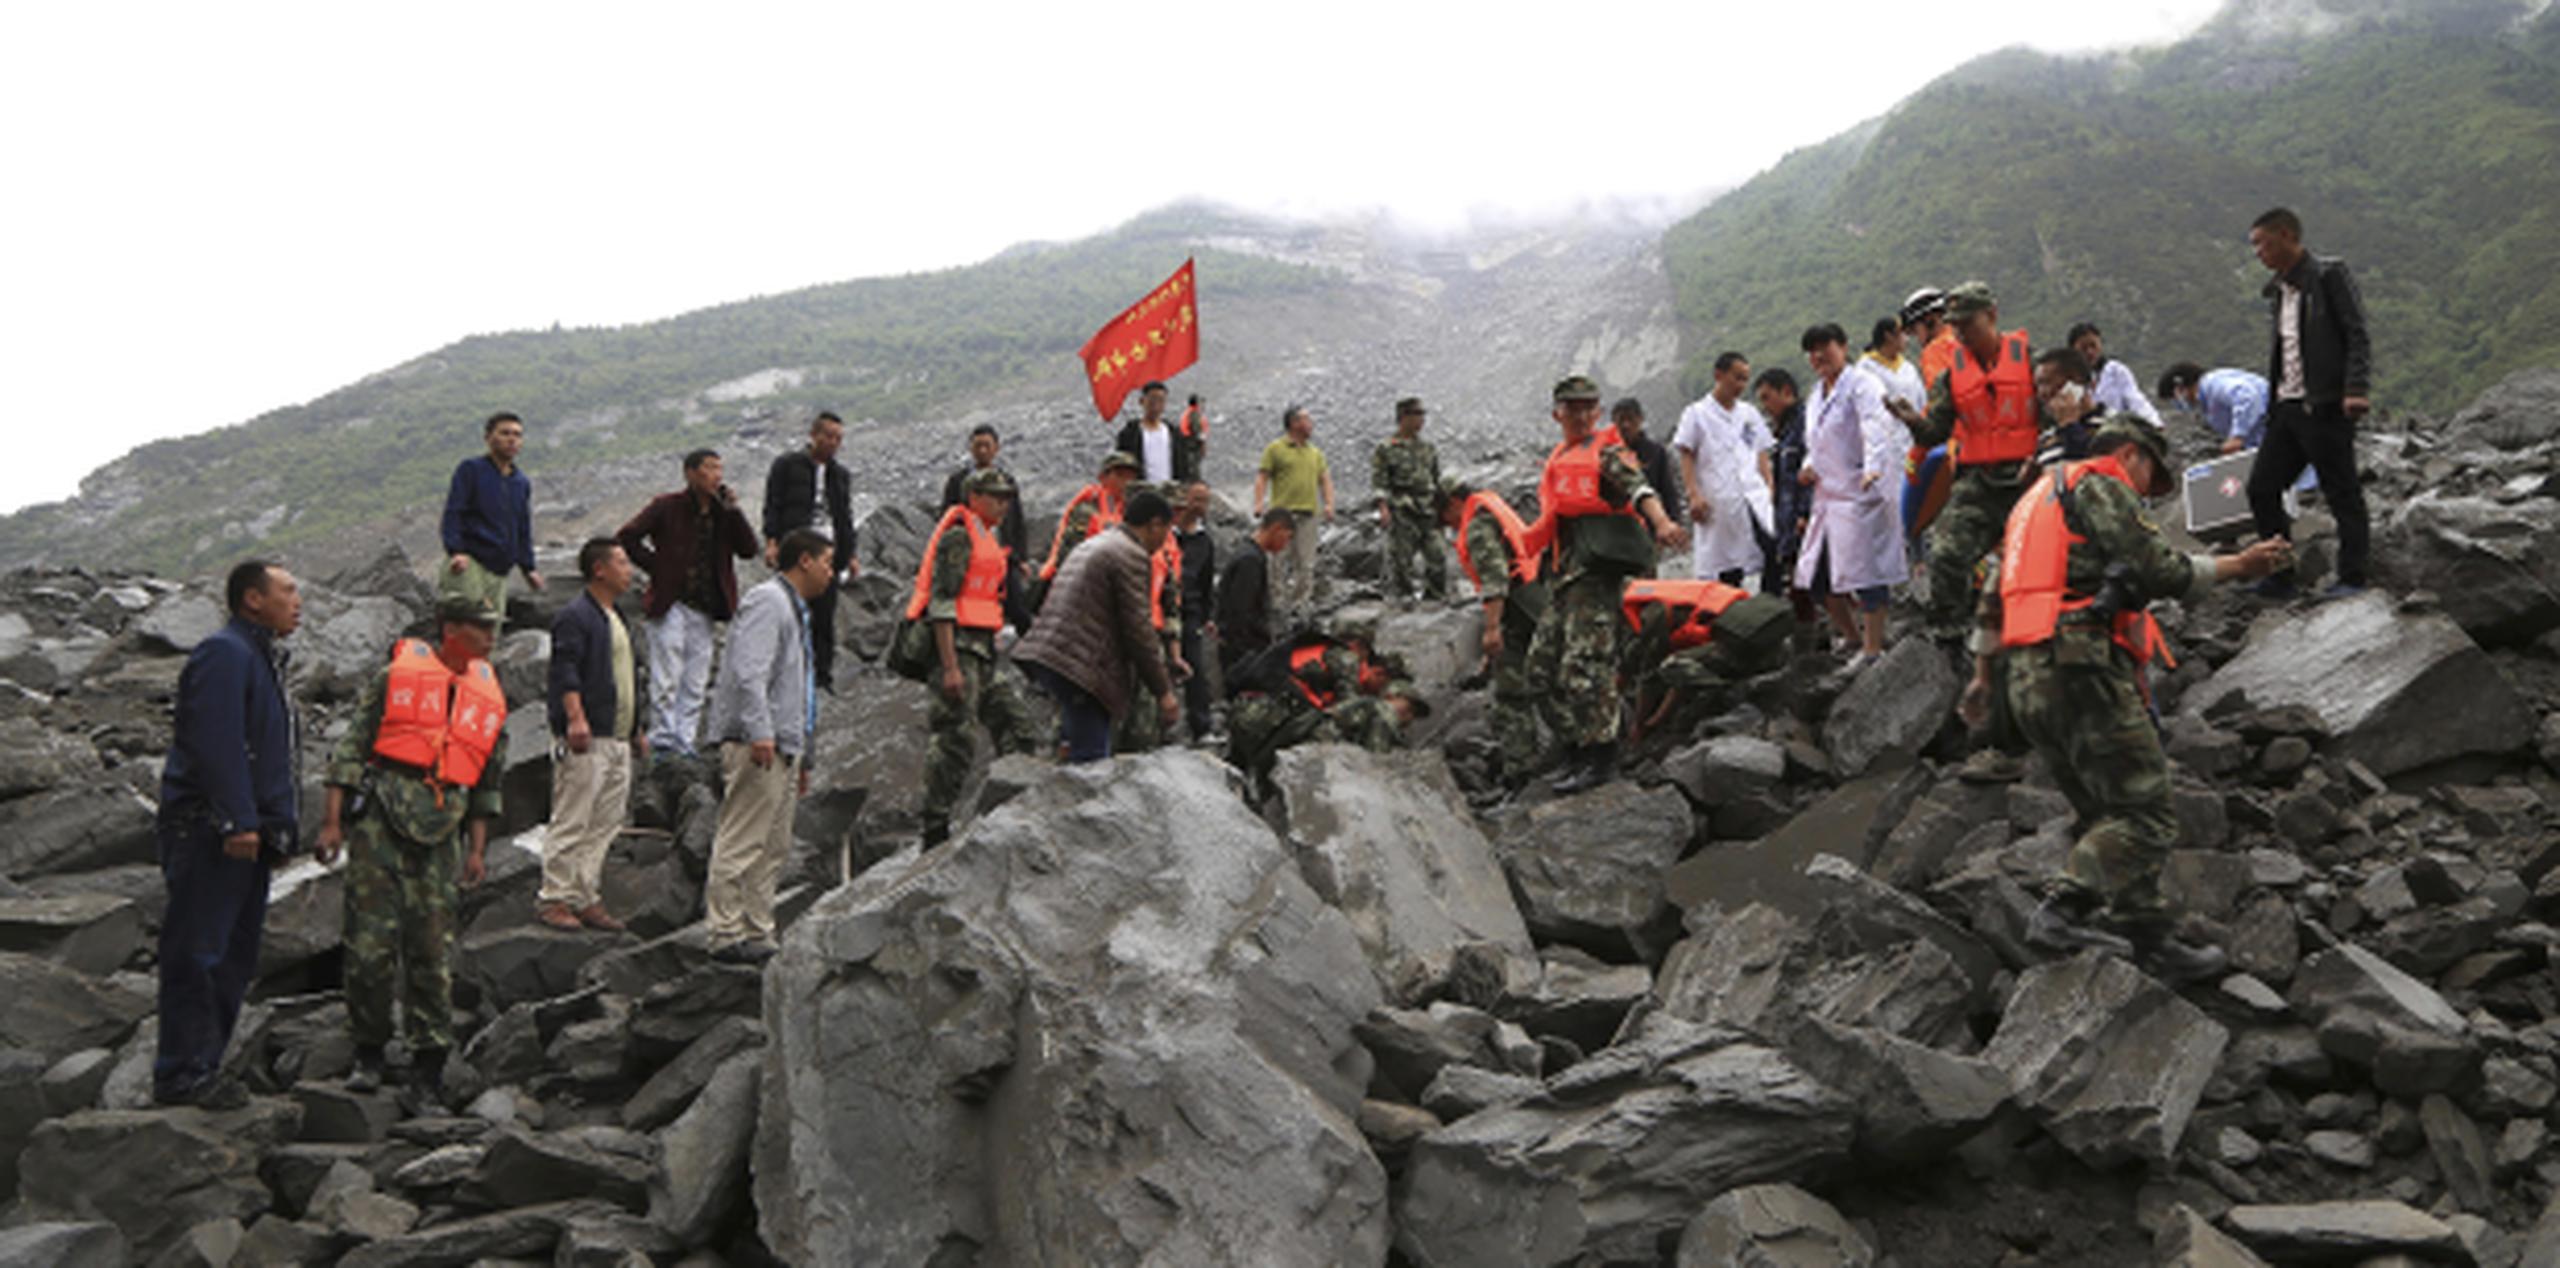 Rescatistas y personal de emergencias intentan encontrar sobrevivientes bajo las piedras que dejó el deslave en Xinmo, provincia de Sichuan. (He Qinghai/Xinhua via AP)